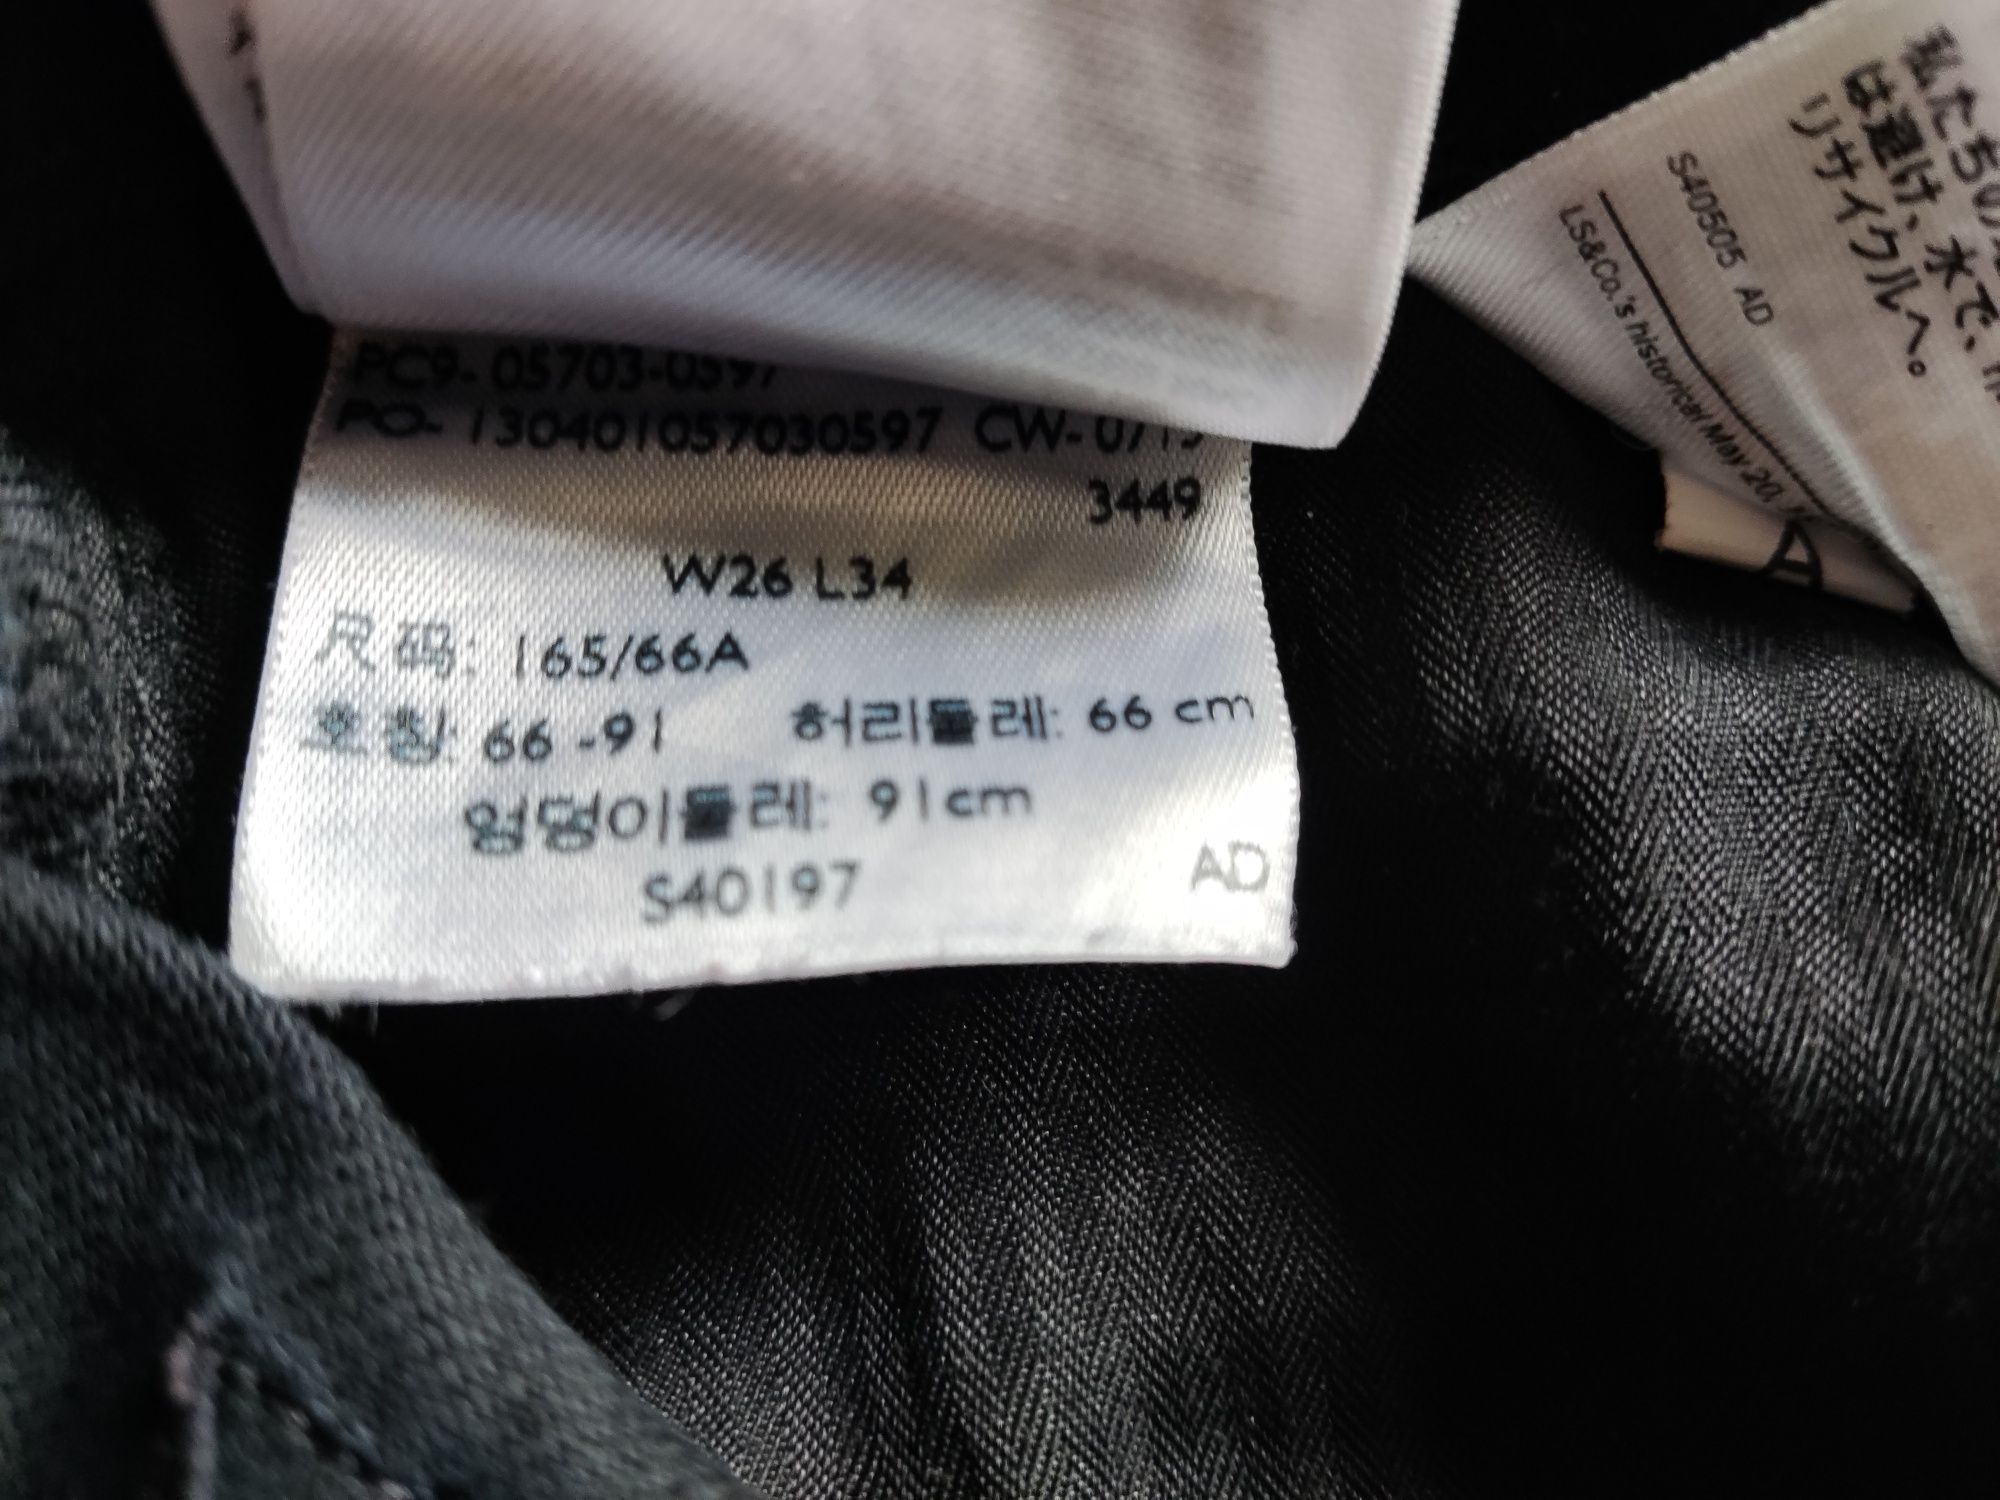 Spodnie jeansowe damskie firmy Levis W26L34